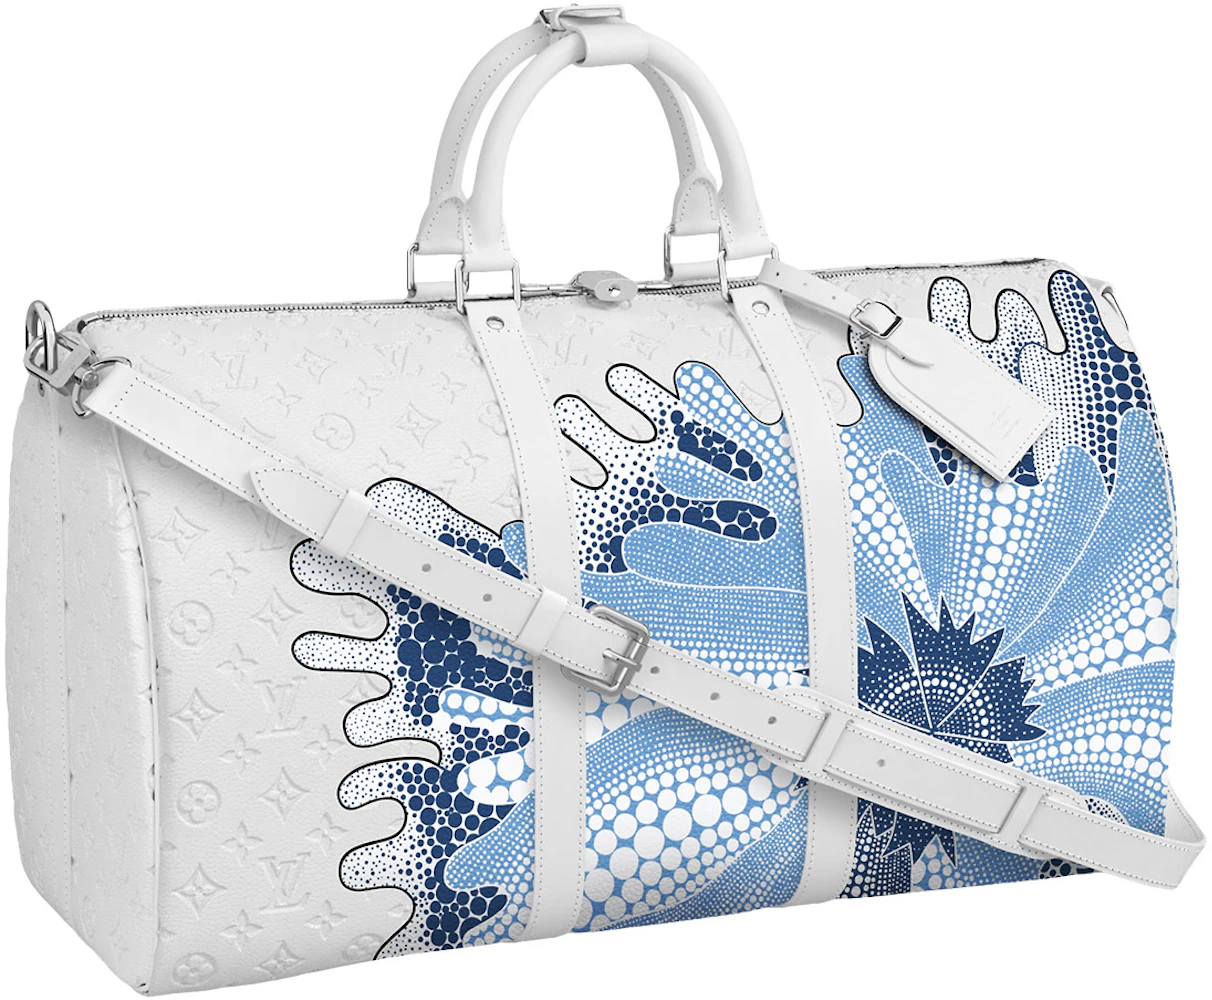 Louis Vuitton Yayoi Kusama Keepall Bandouliere 55 Travel Bag